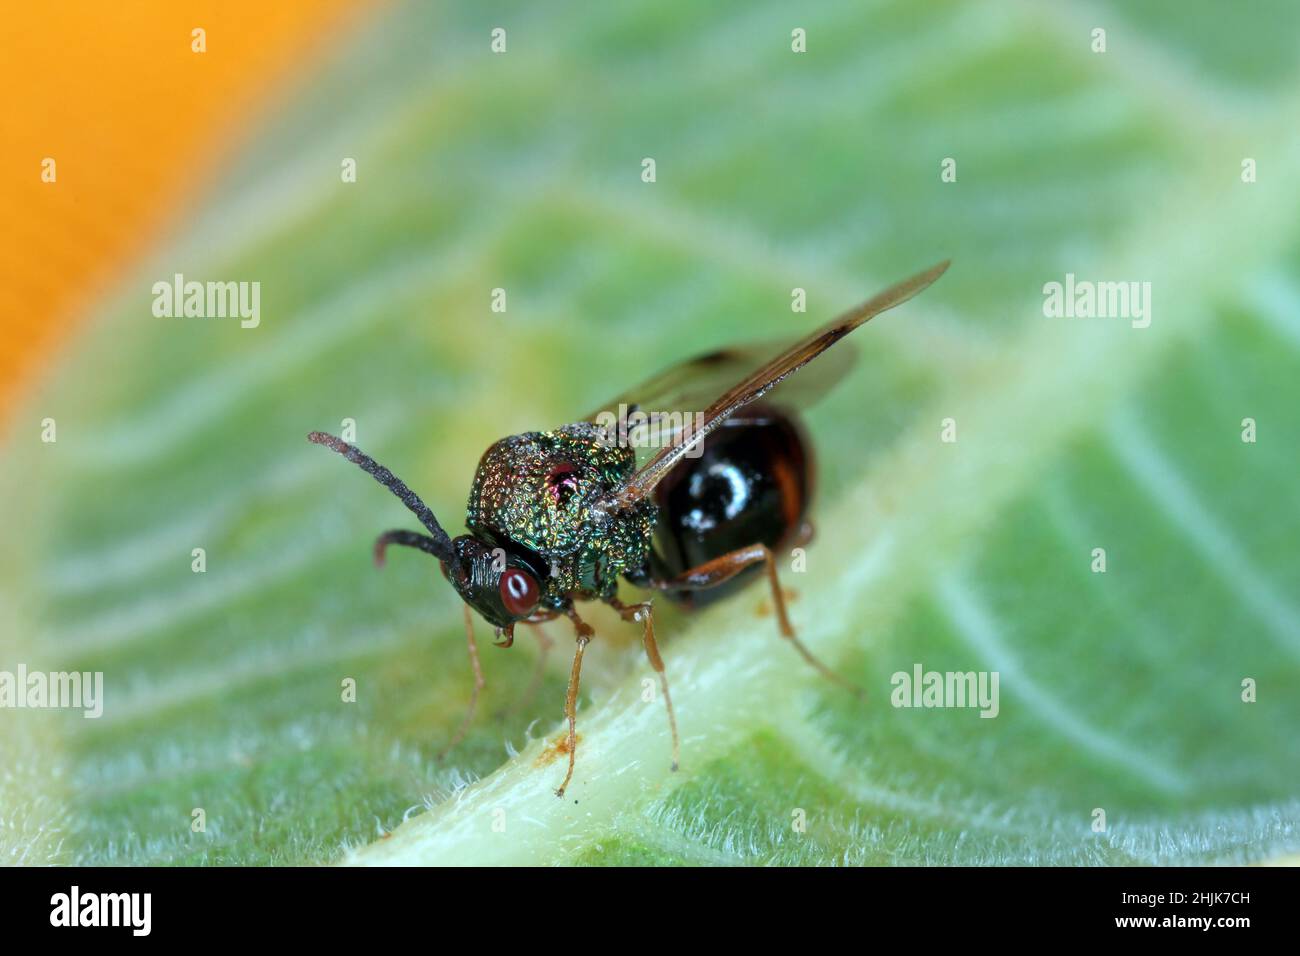 Parasitäre Hymenoptera der Familie Eucharitidae - Stilbula cyniformis. Die Larven dieser Wespe parasitieren Ameisen. Stockfoto